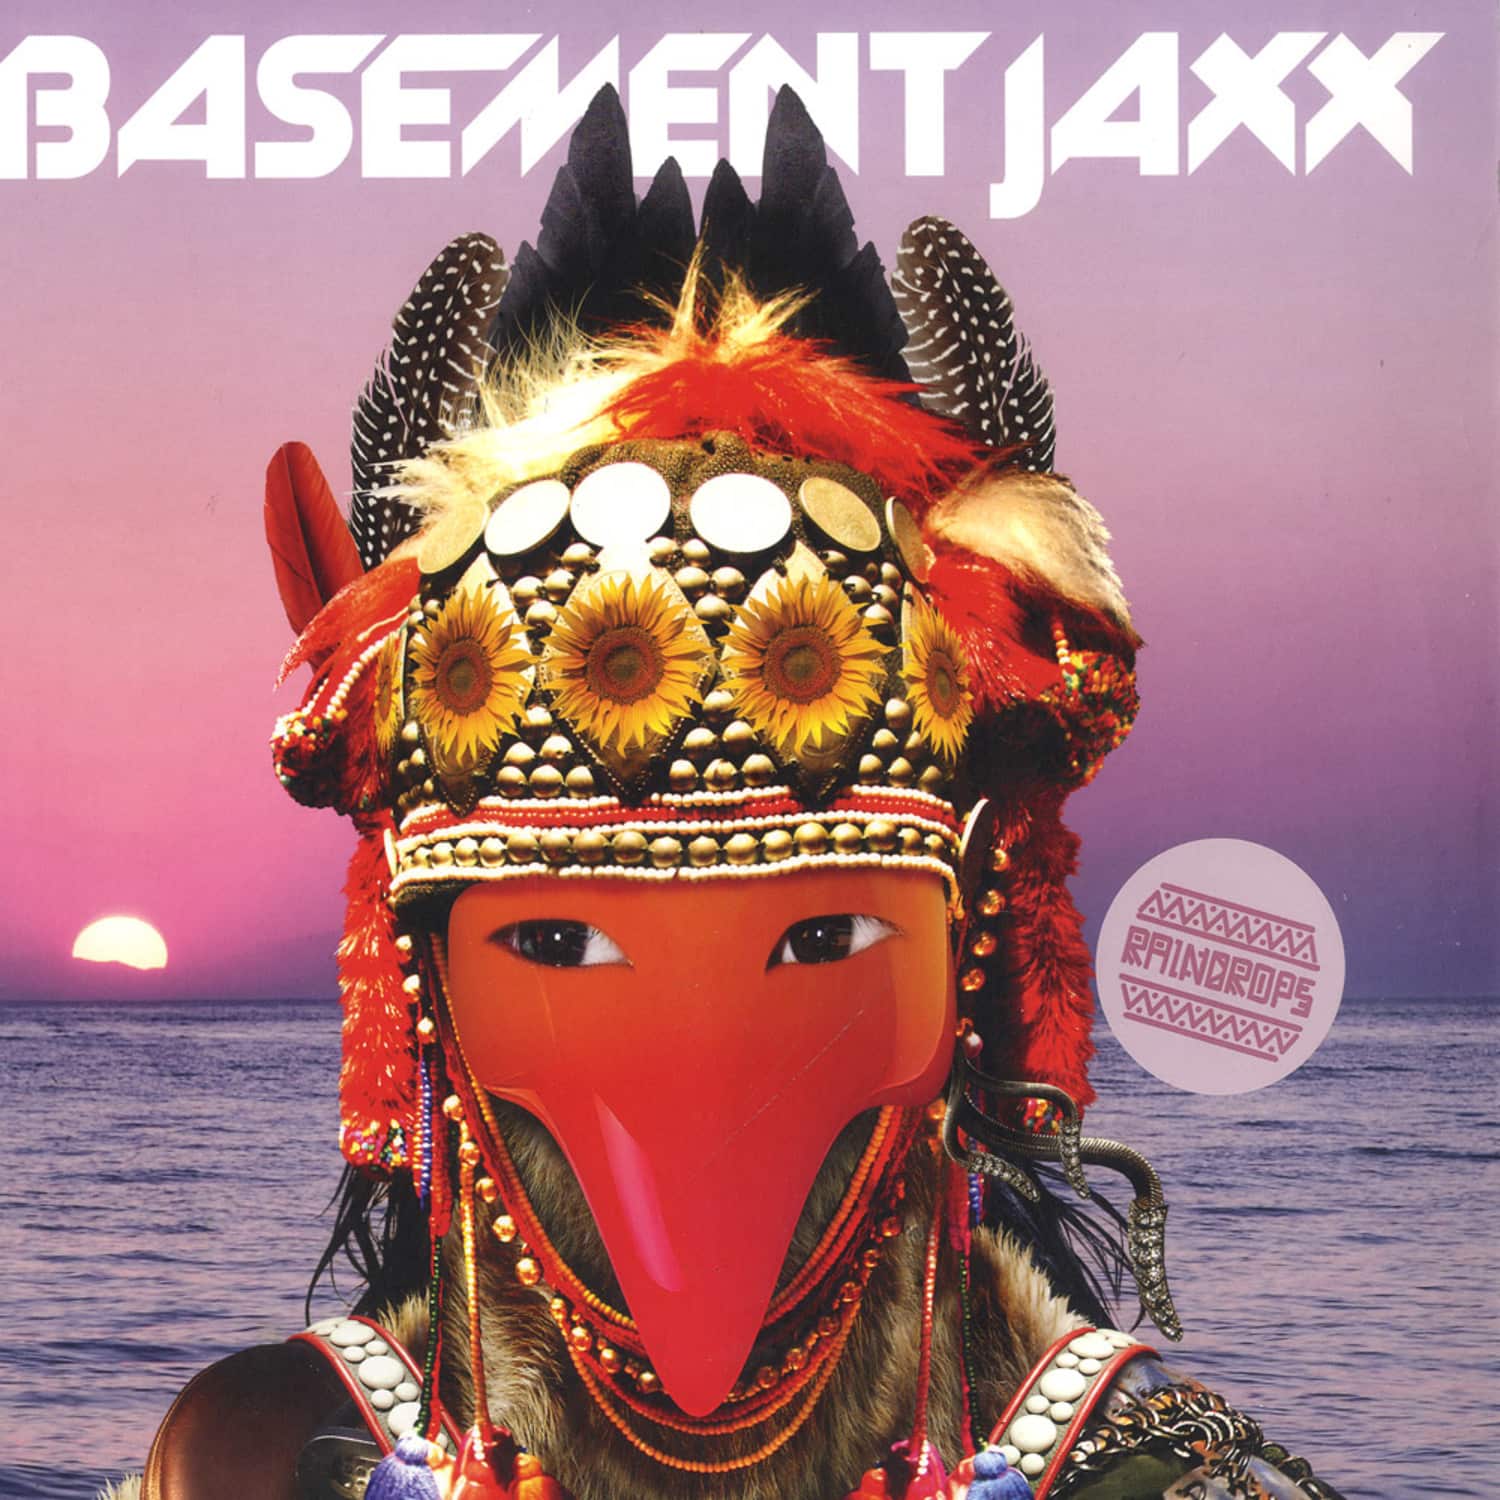 Basement Jaxx - RAINDROPS